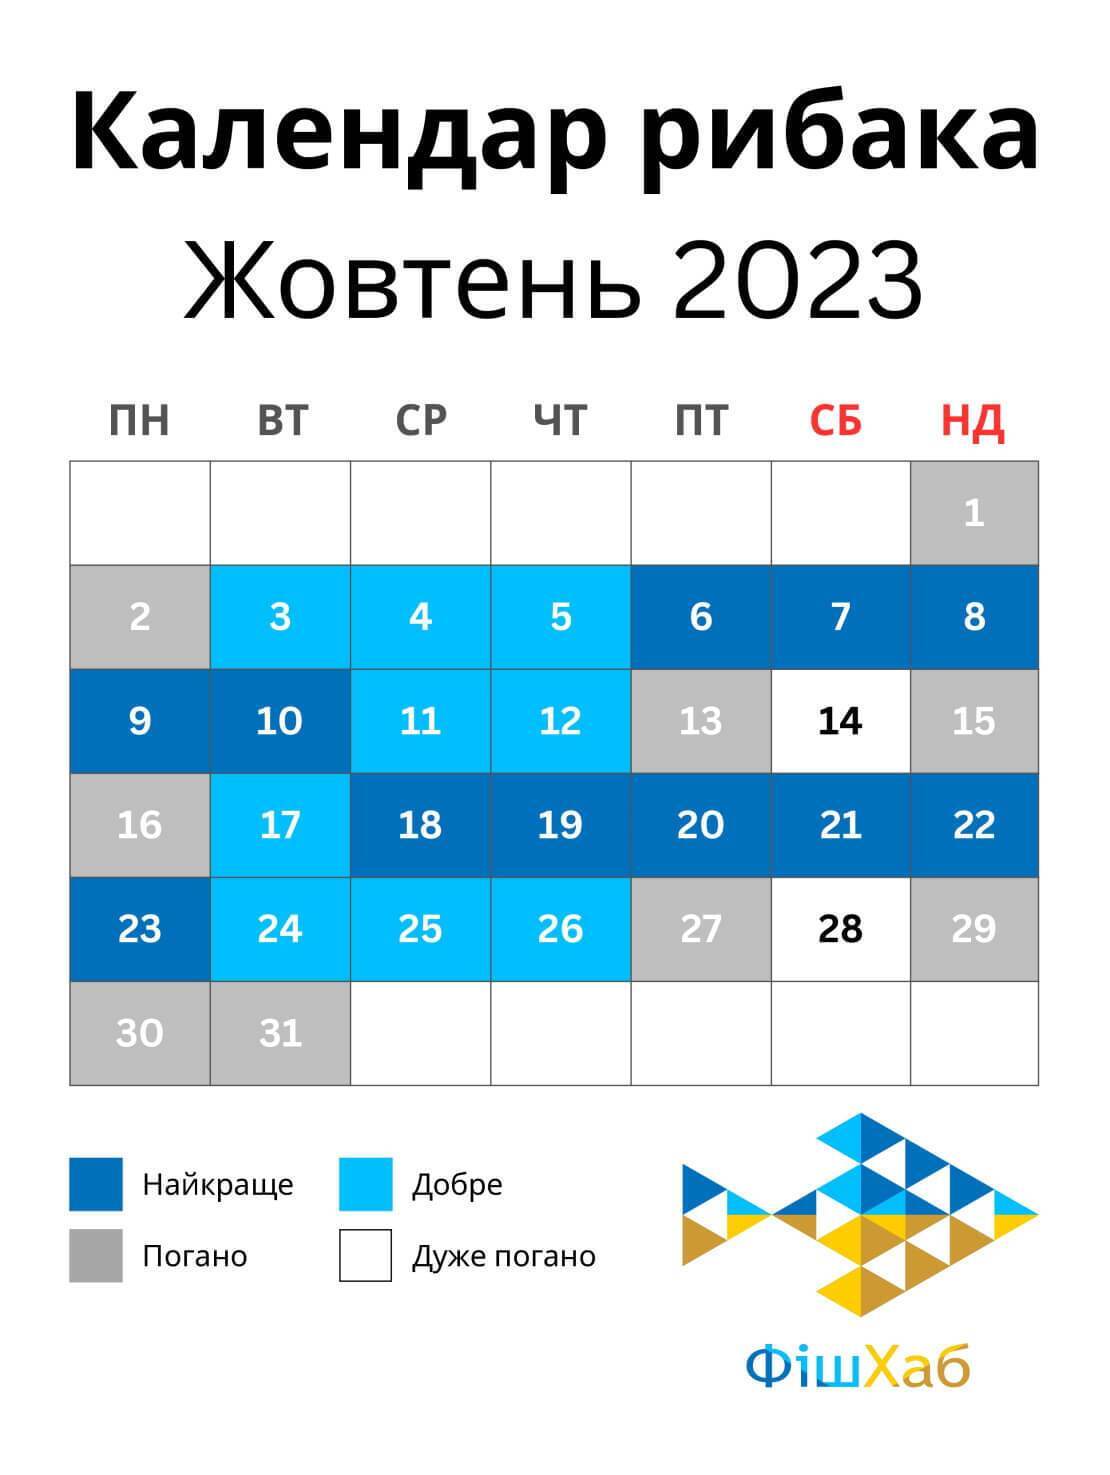 Календарь рыбака на октябрь 2023 - советы для лучшего клева и улова |  OBOZ.UA